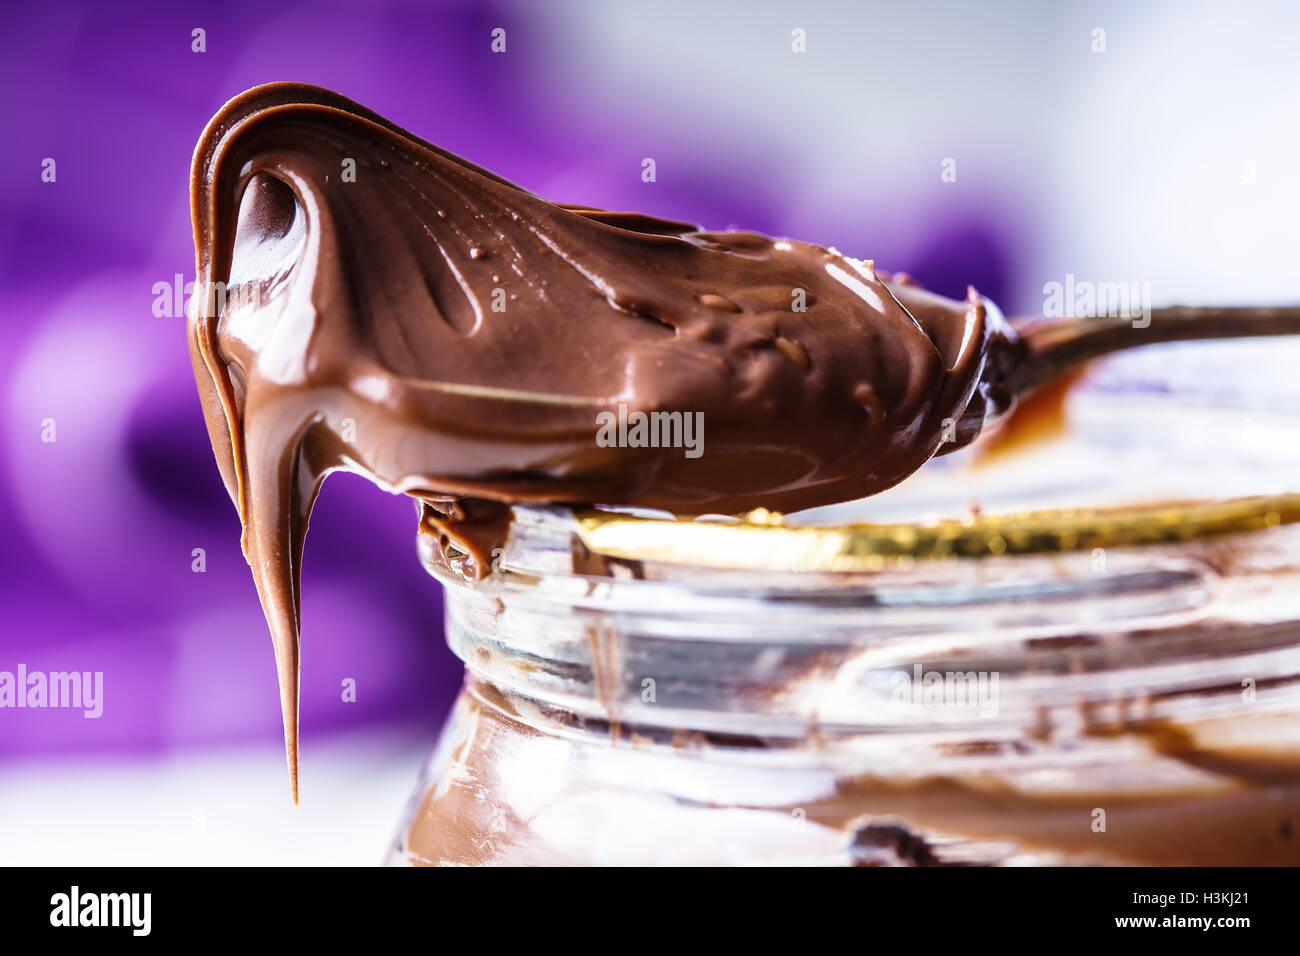 Chocolate spread in spoon. A jar of hazelnut chocolate spread. Stock Photo